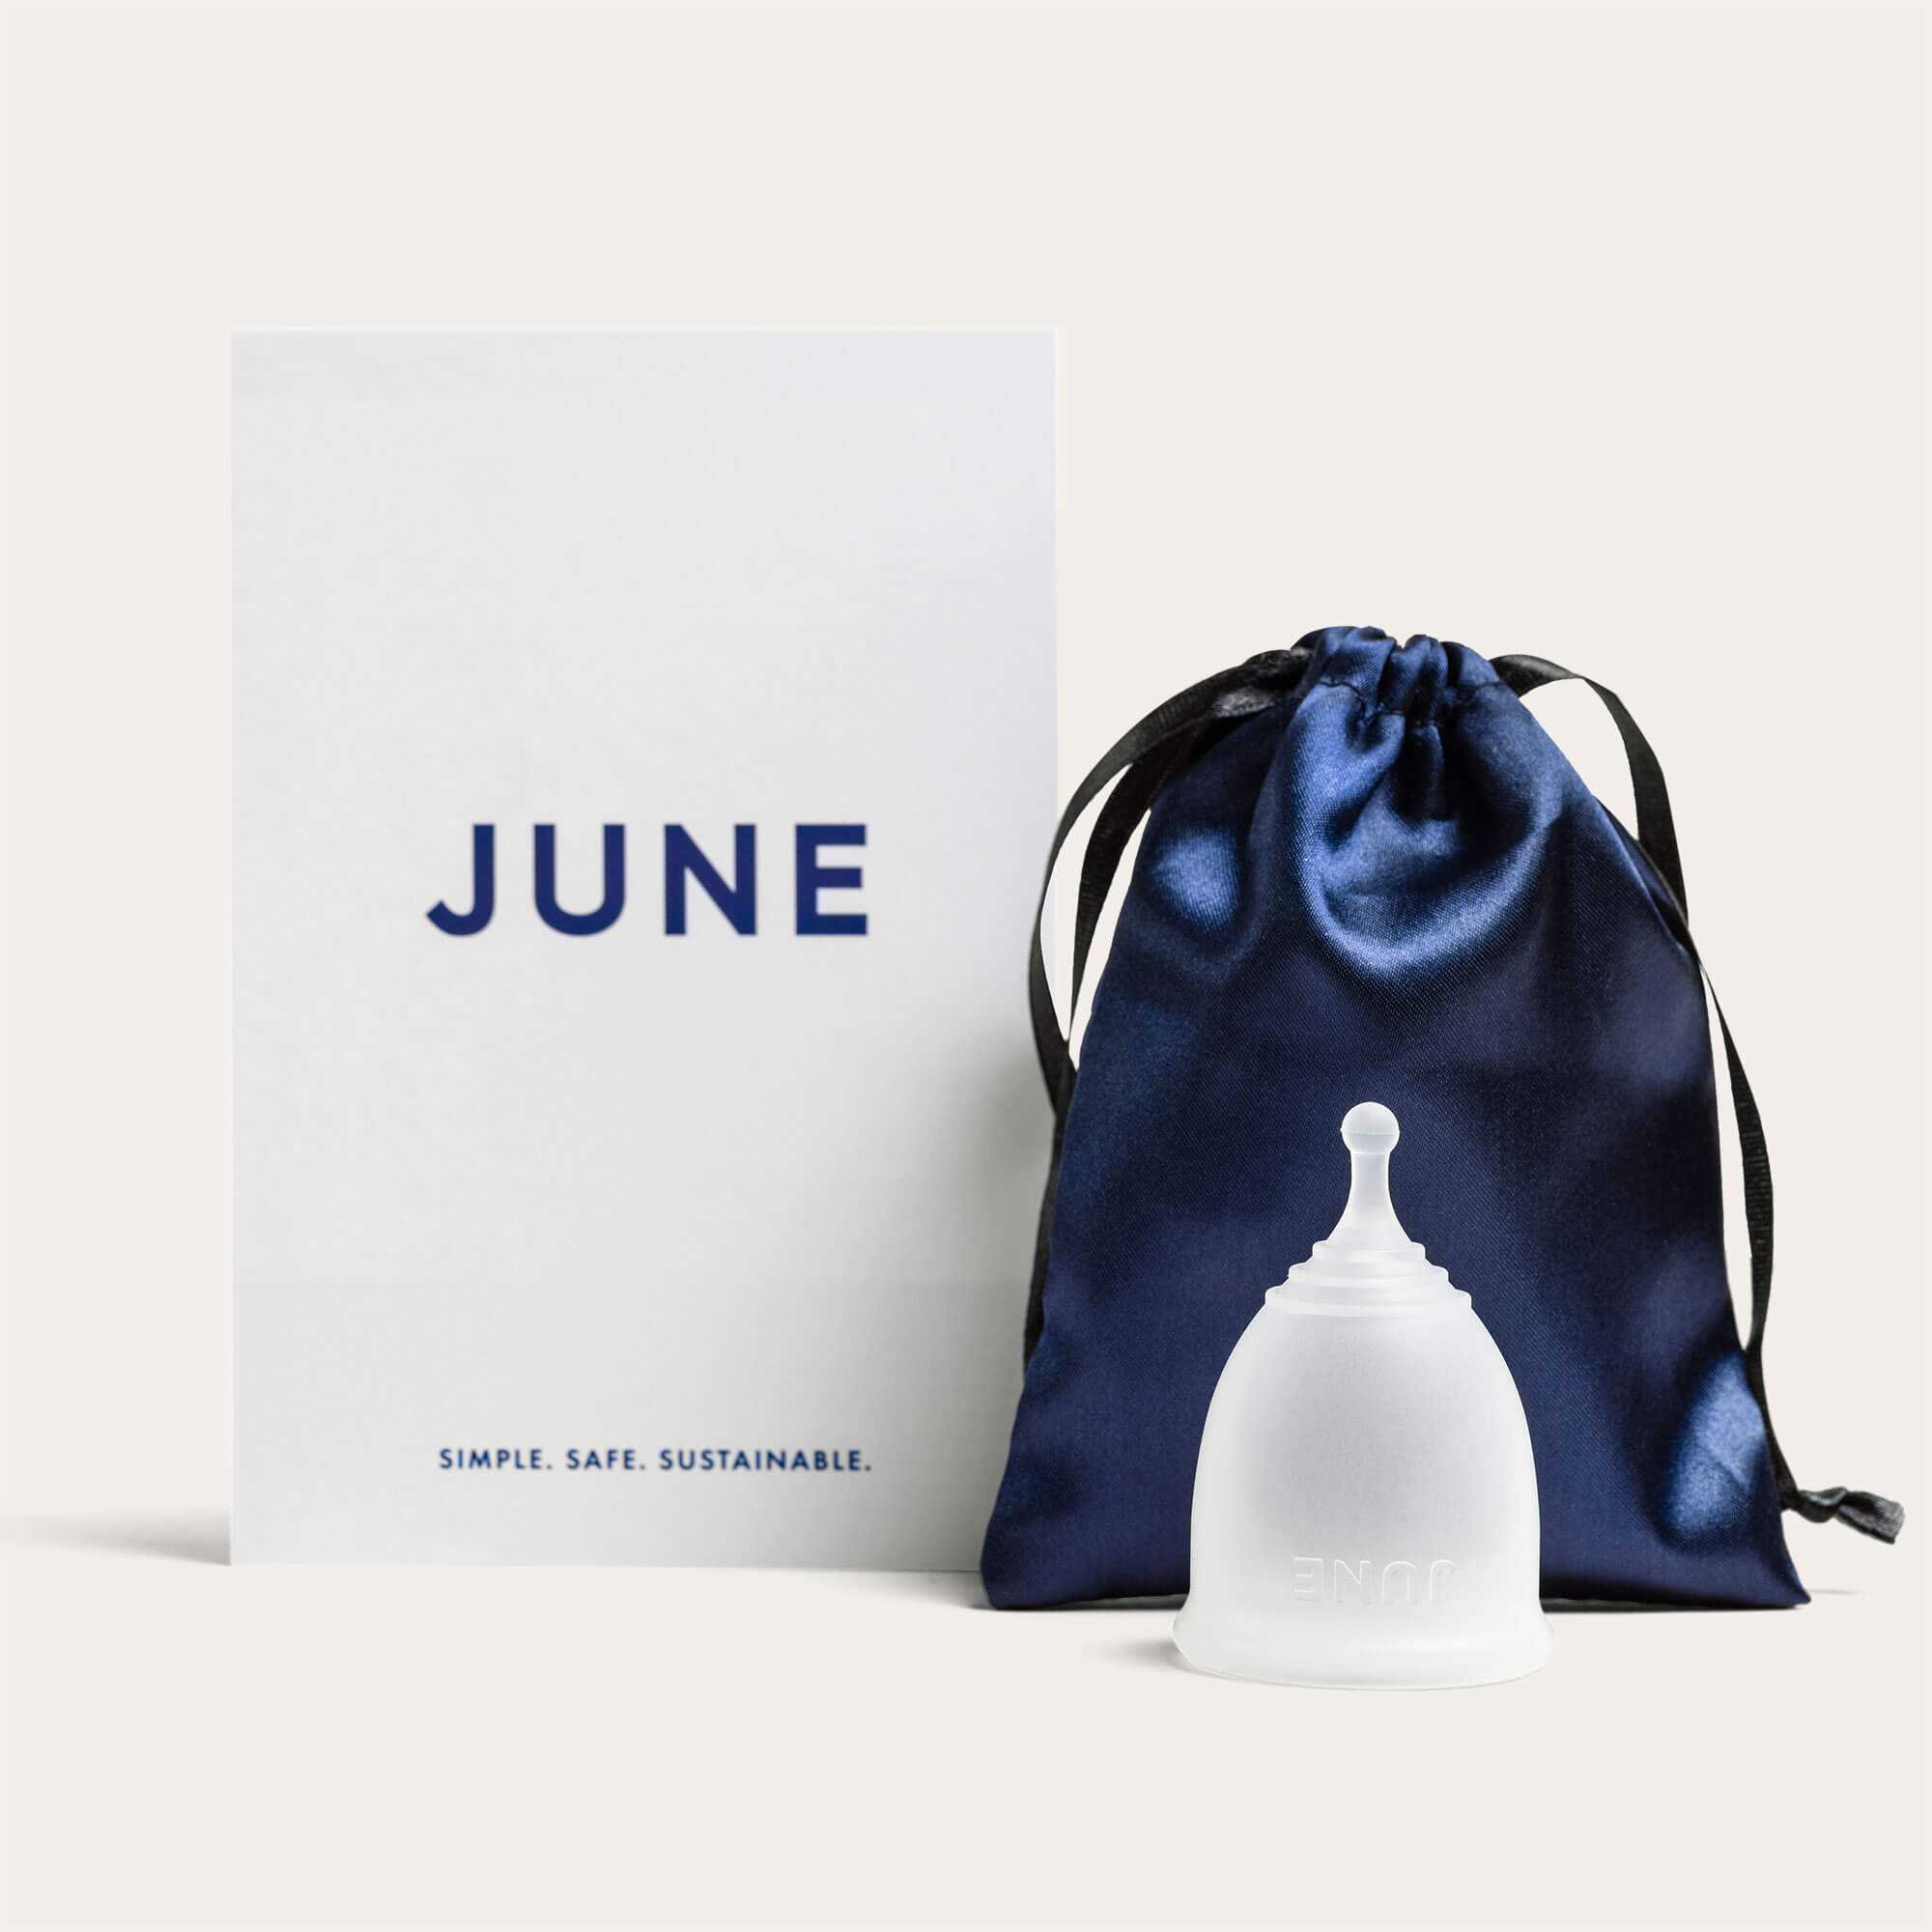 JUNE | The Original June Menstrual Cup The June Cup